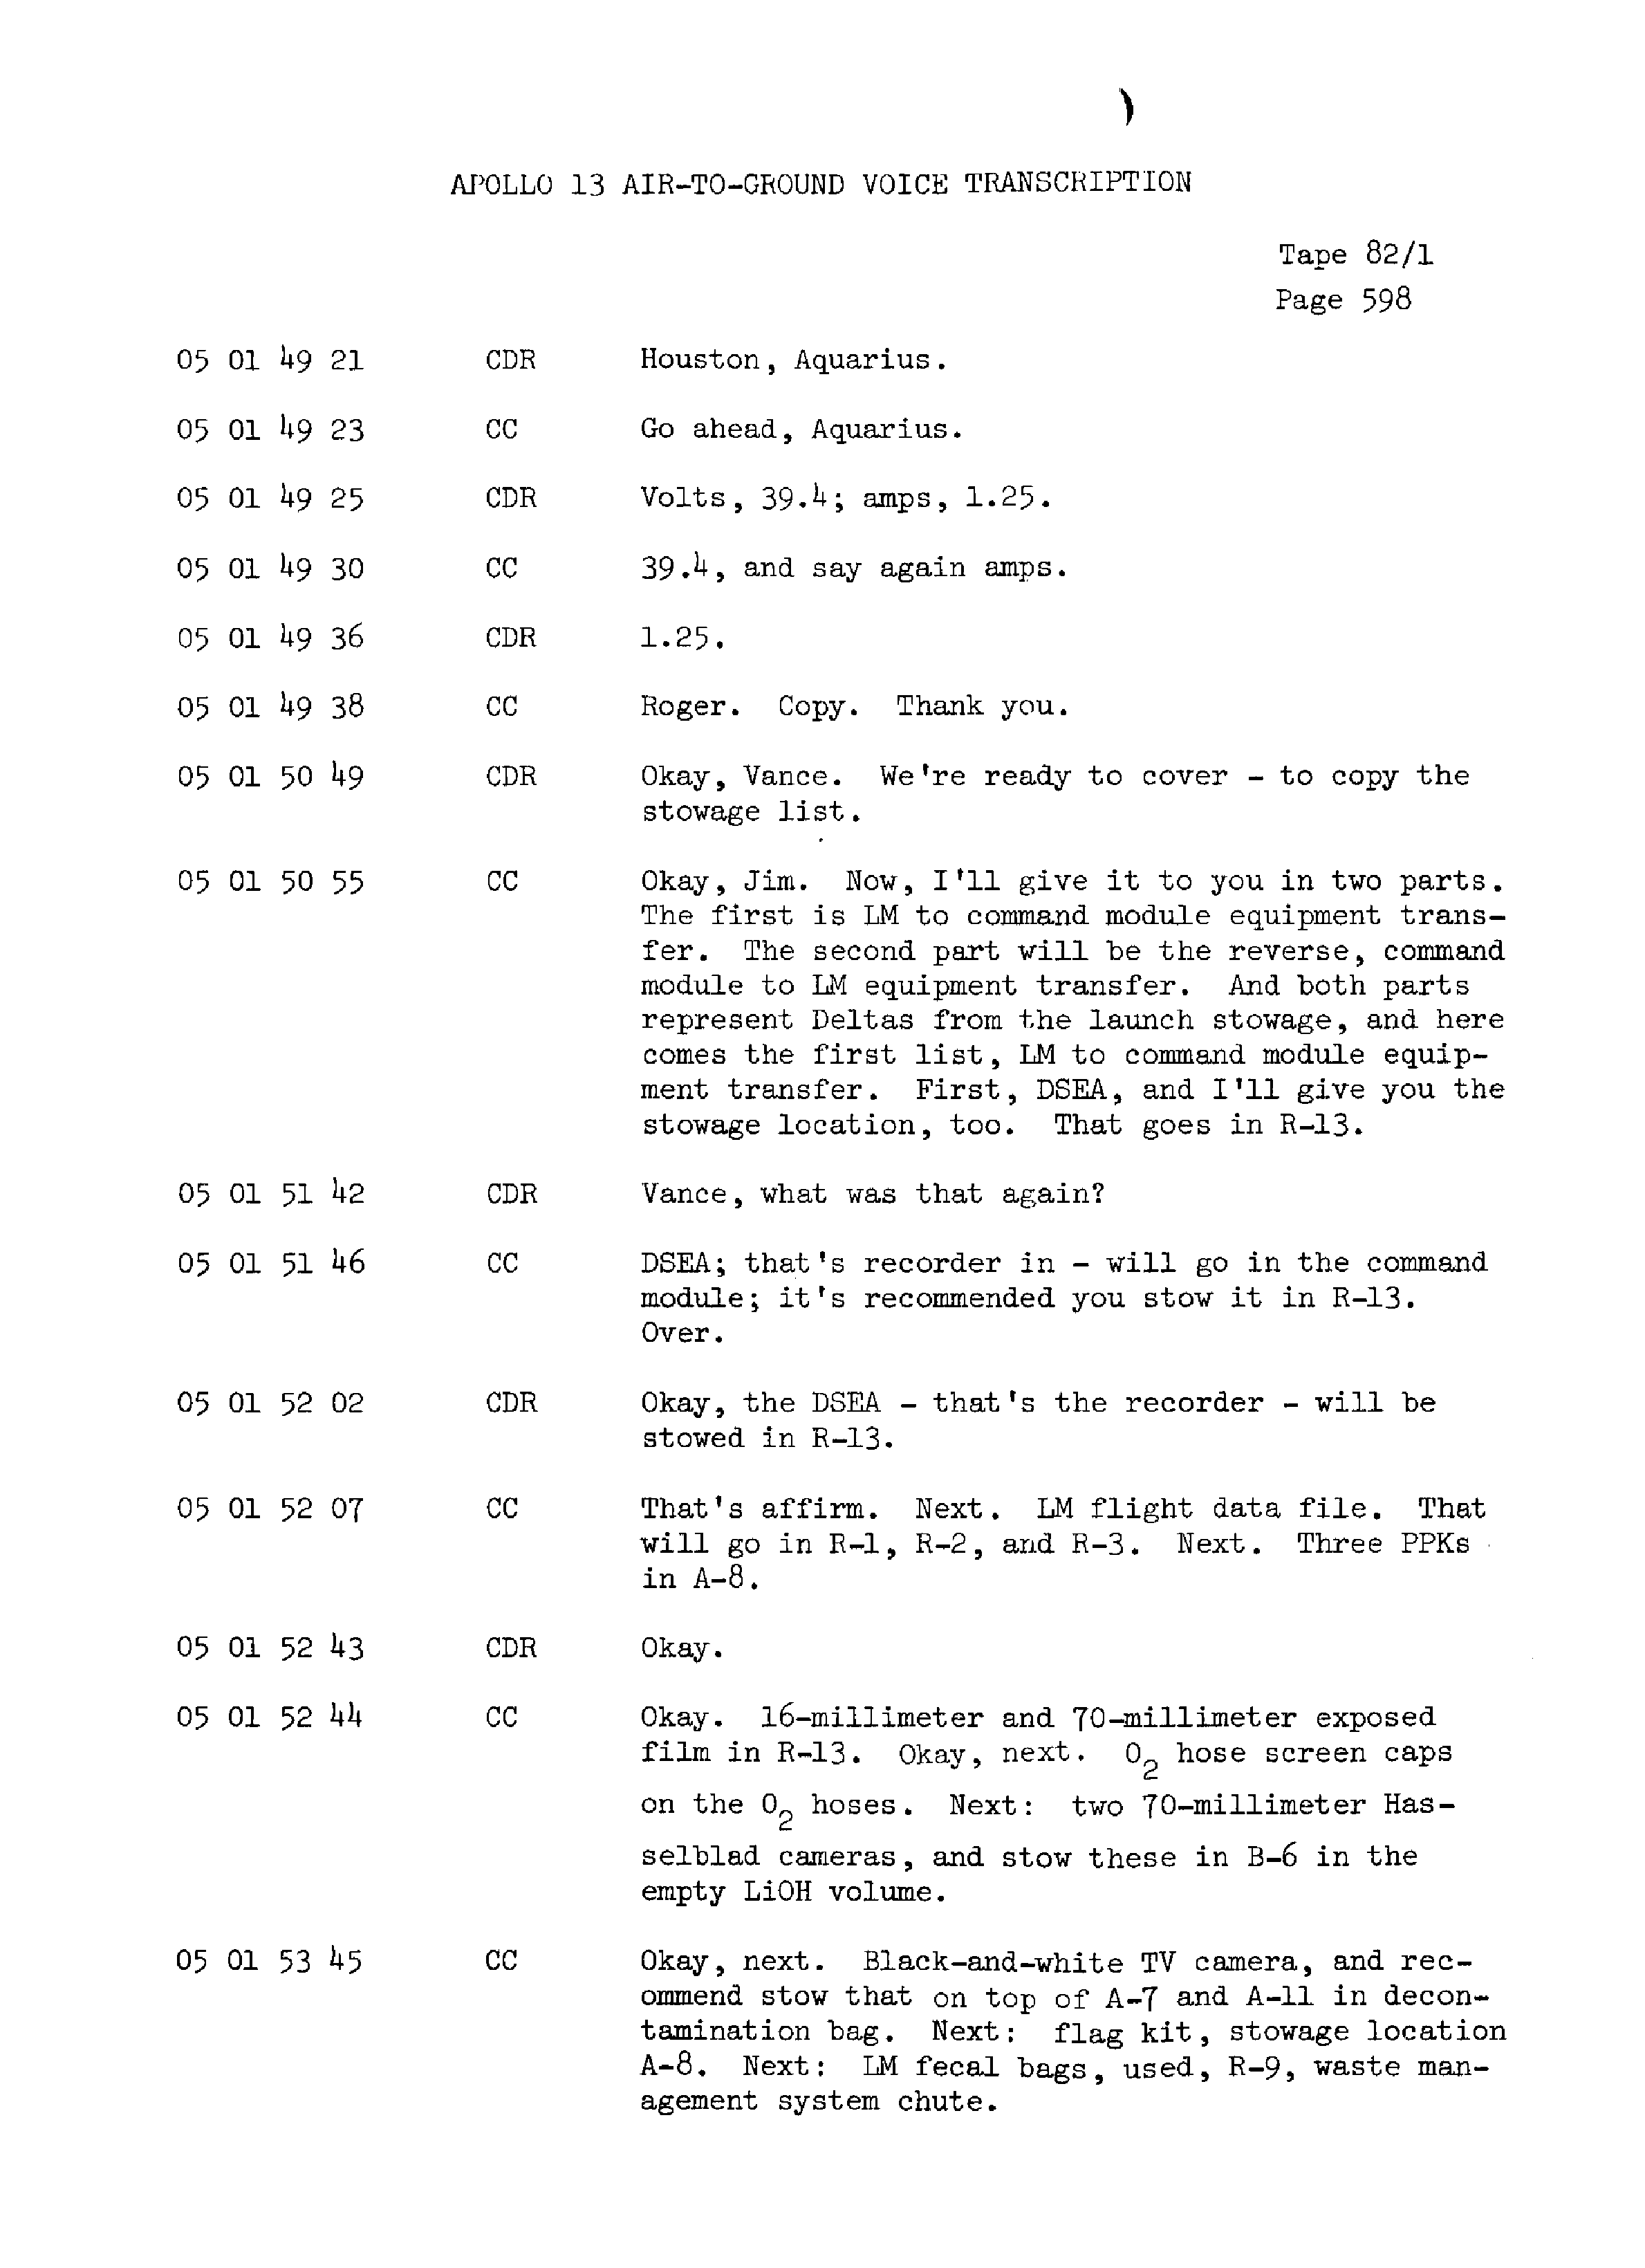 Page 605 of Apollo 13’s original transcript